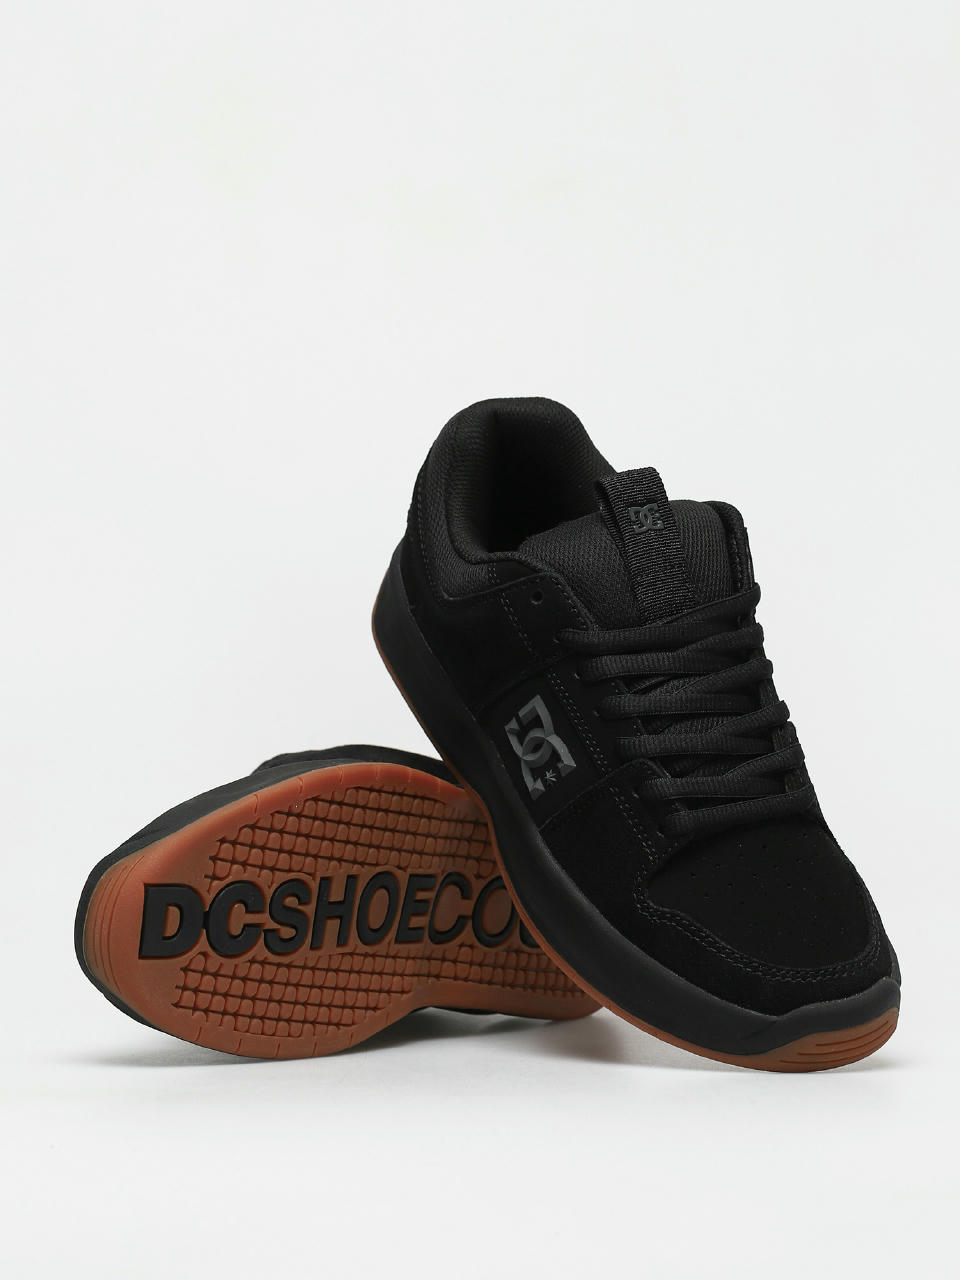 DC Lynx Zero Shoes (black/gum)